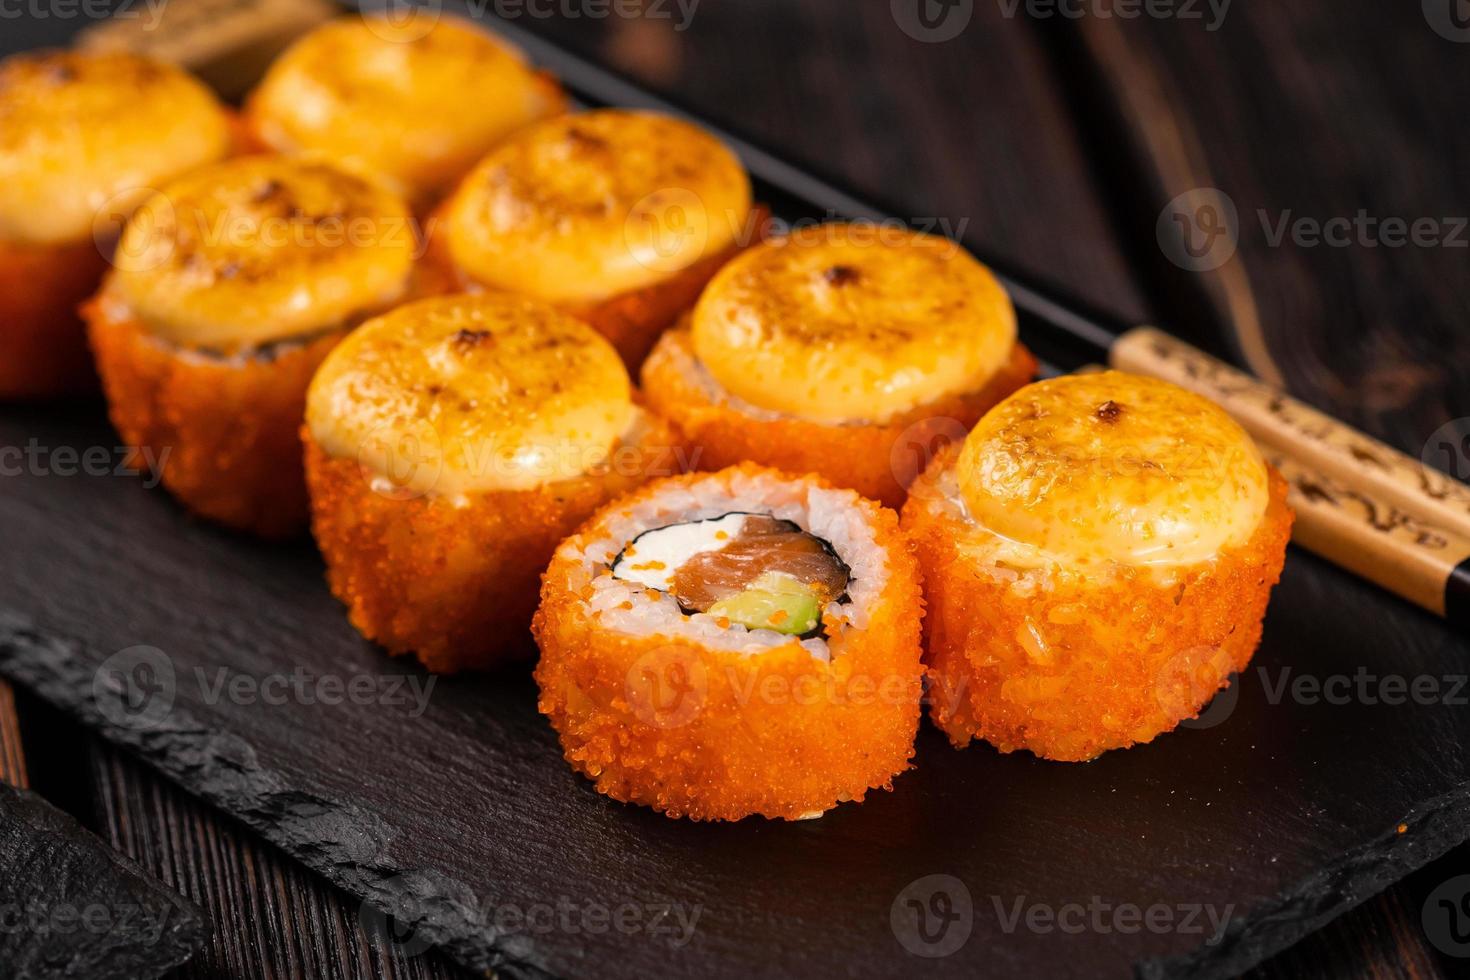 rolo de sushi com caviar de salmão, abacate e tobiko servido em close-up de quadro negro - comida asiática japonesa foto